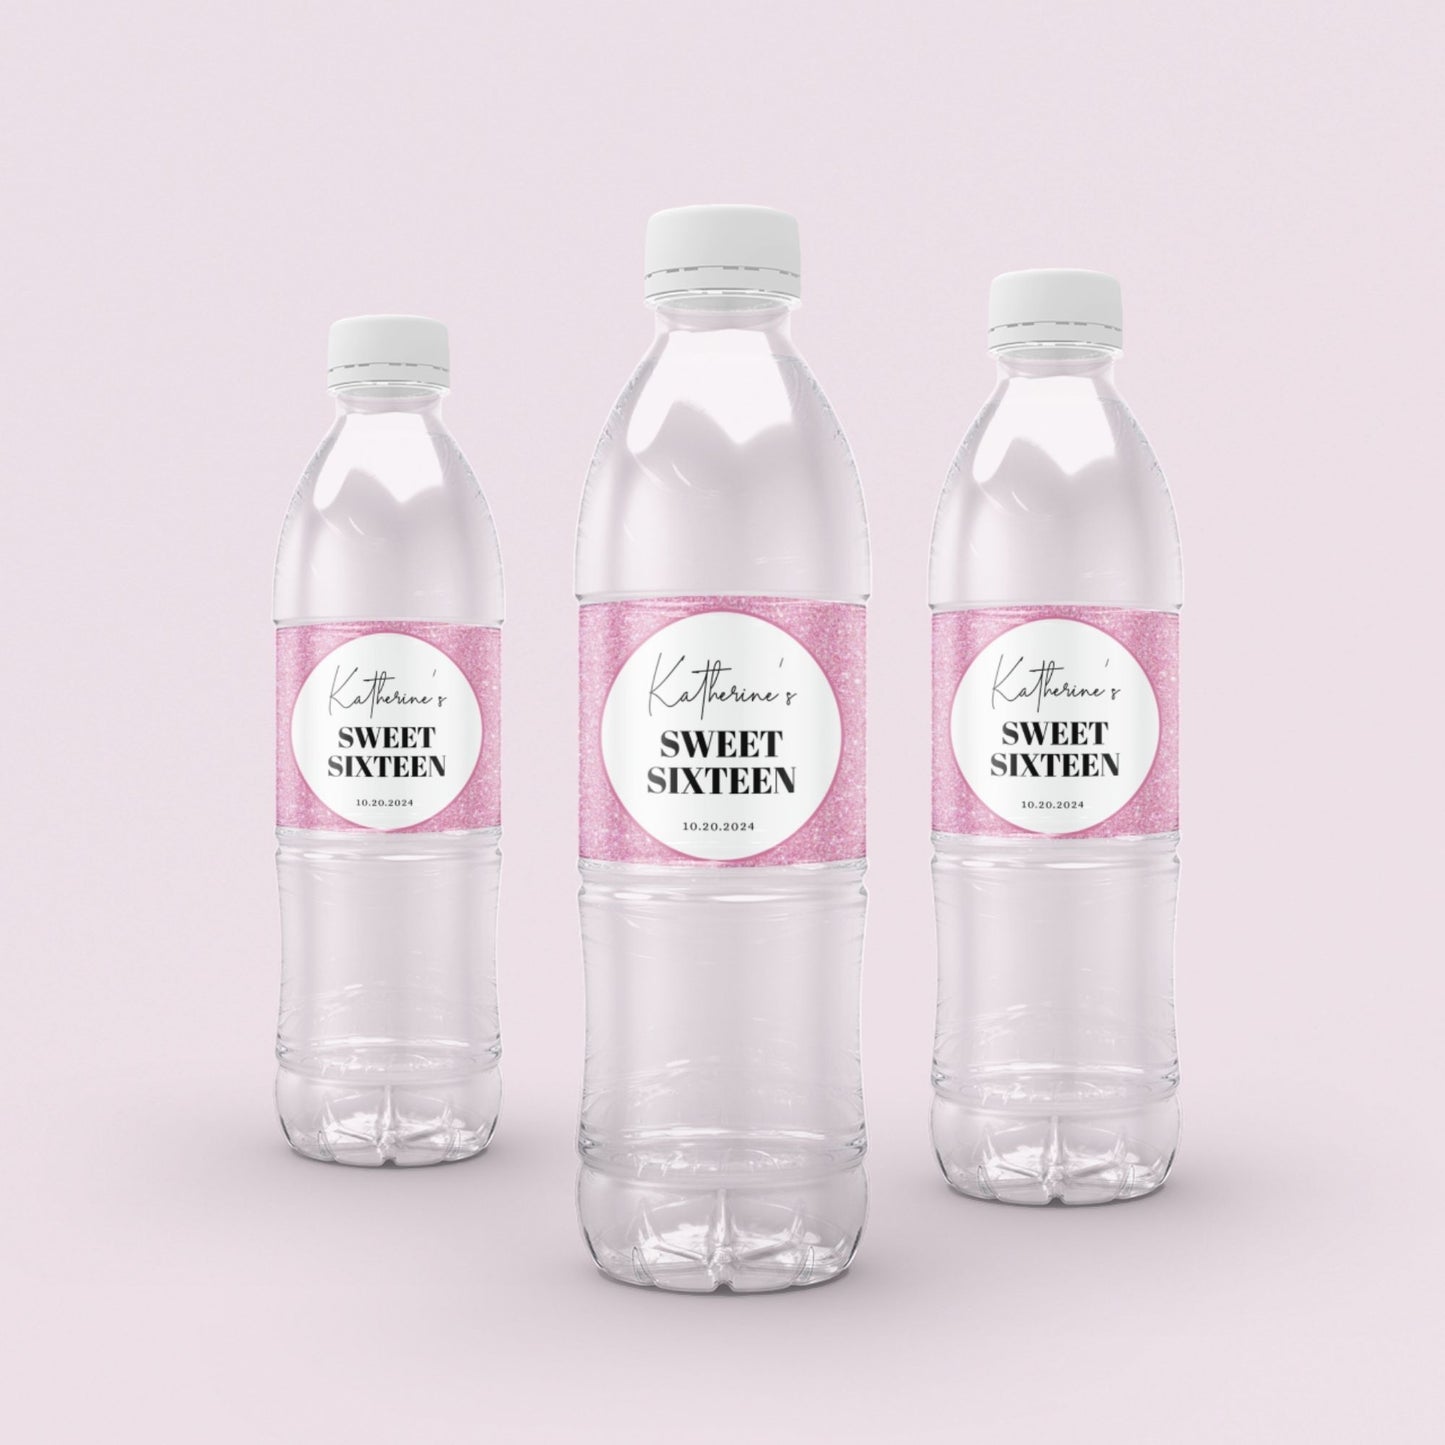 Sweet 16 Water Bottle Label Template